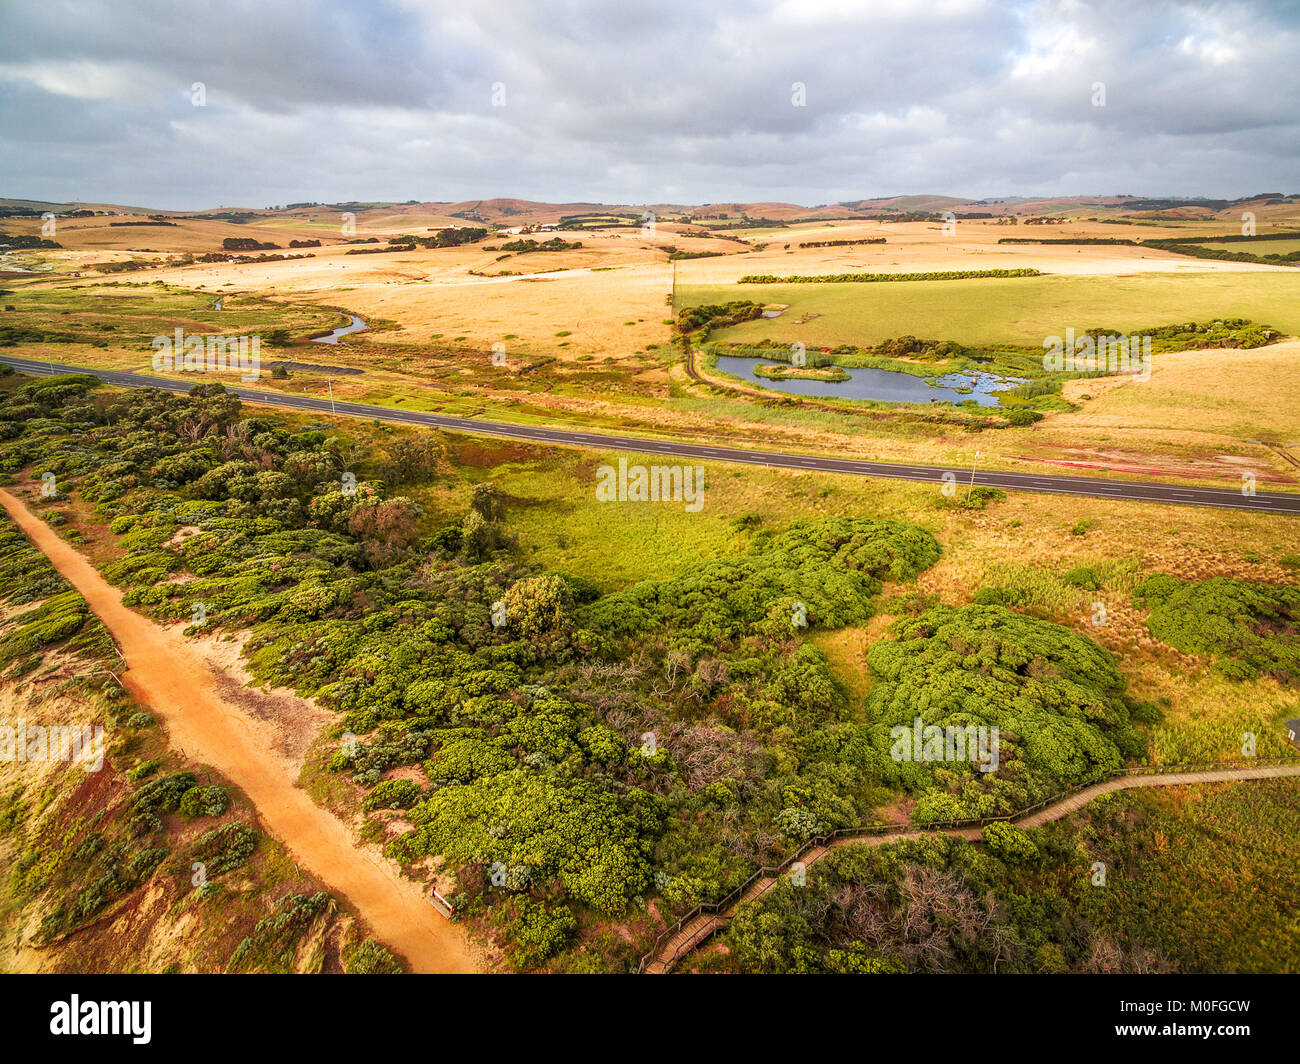 Ländliche Straße durch Wiesen und Weiden in Australien vorbei - Luftbild Landschaft Stockfoto